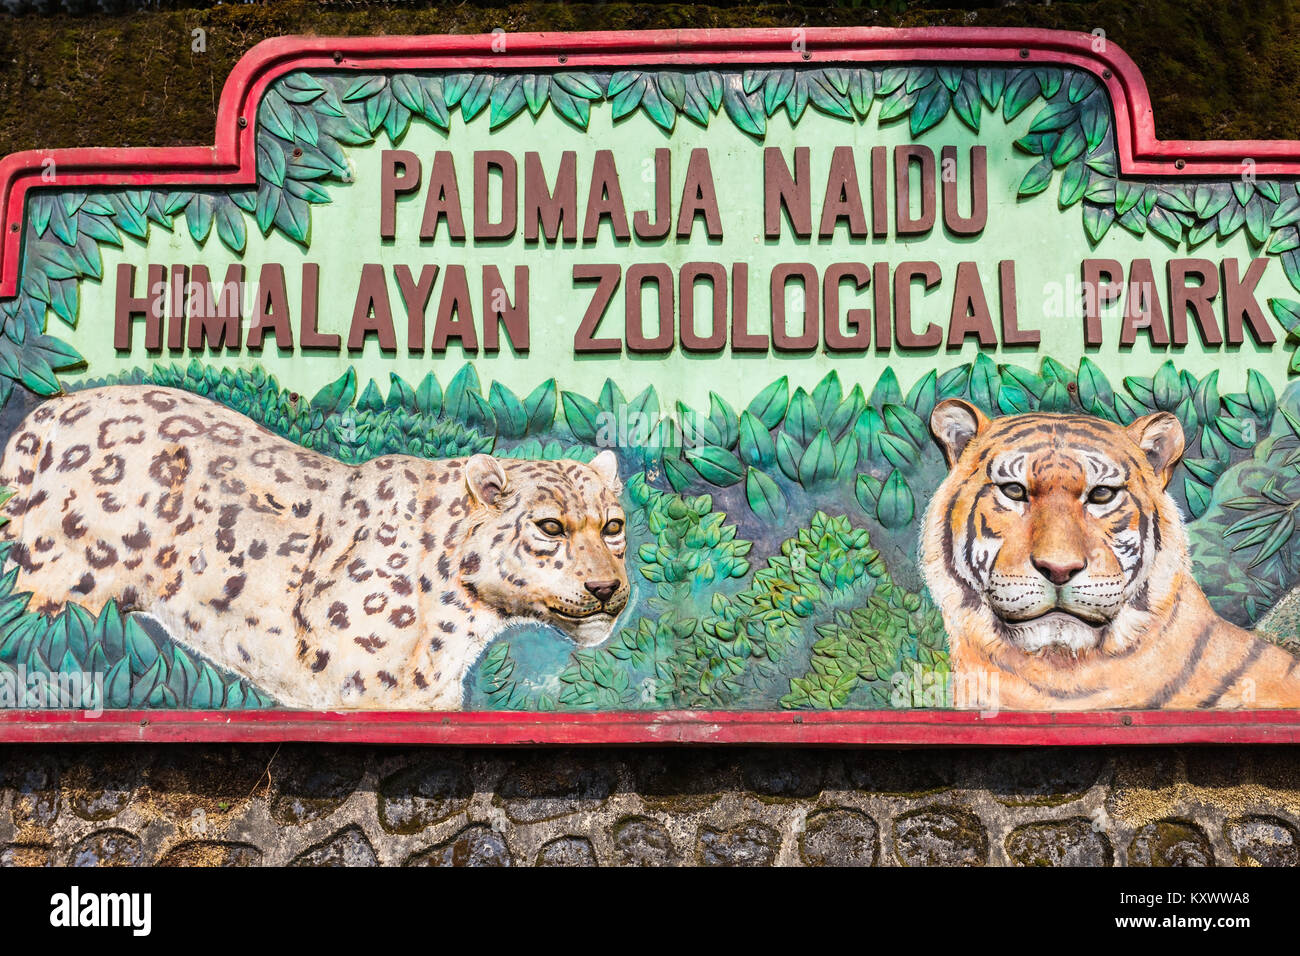 Padmaja naidu himalayan zoological park hi-res stock photography and images  - Alamy